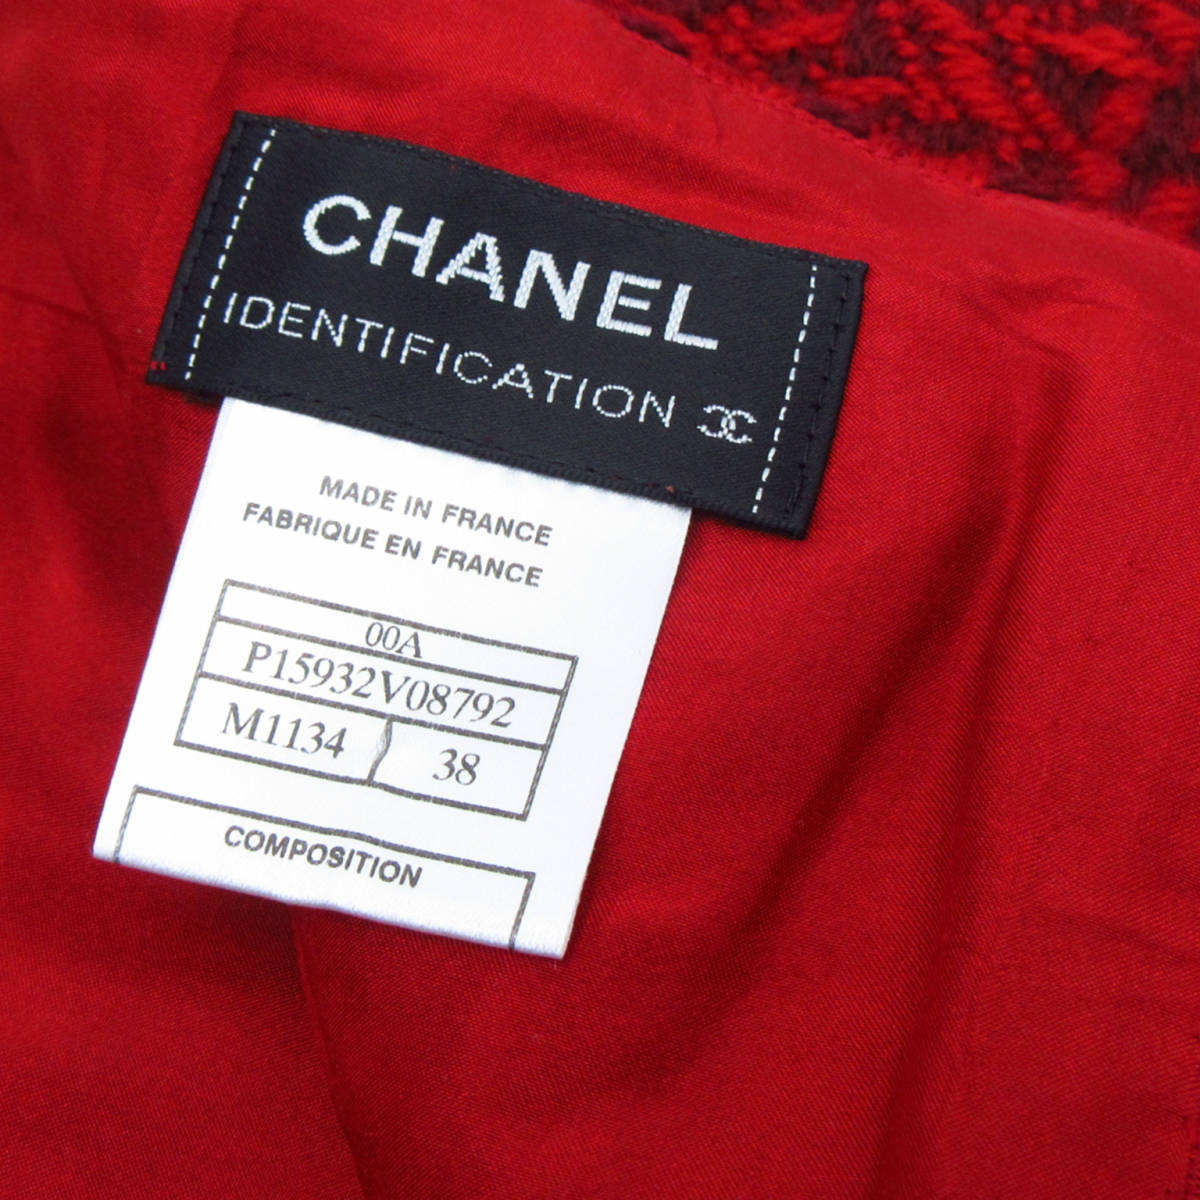 CHANEL シャネル ウール ツイード ジャケット スカート スーツ セットアップ 上下 42/38 レッド系 ココマーク 金ボタン 北TK3.